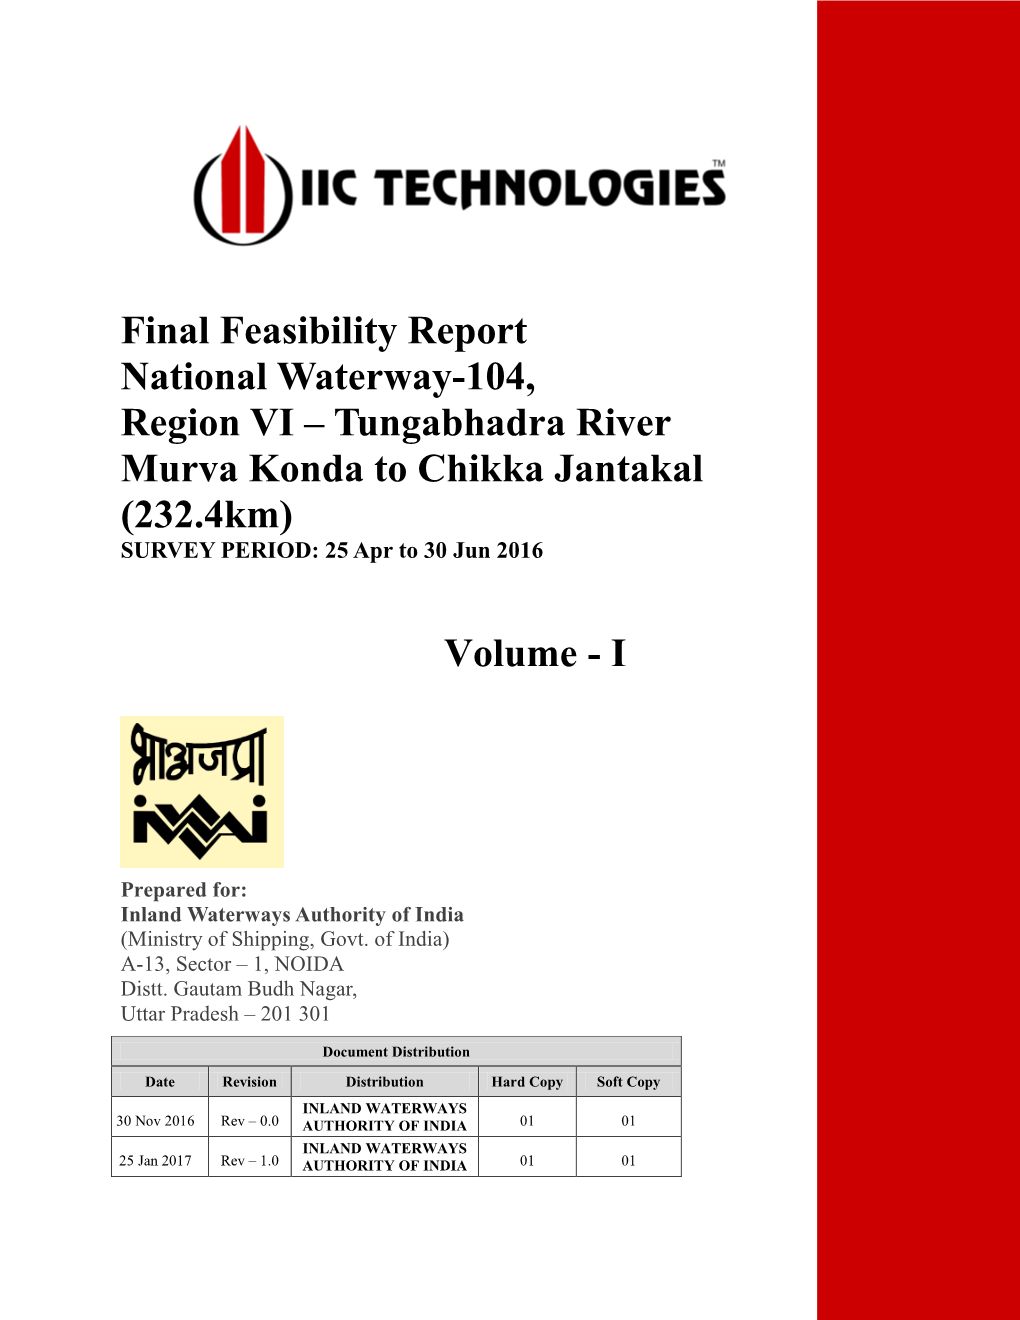 Final Feasibility Report National Waterway-104, Region VI – Tungabhadra River Murva Konda to Chikka Jantakal (232.4Km) Volume